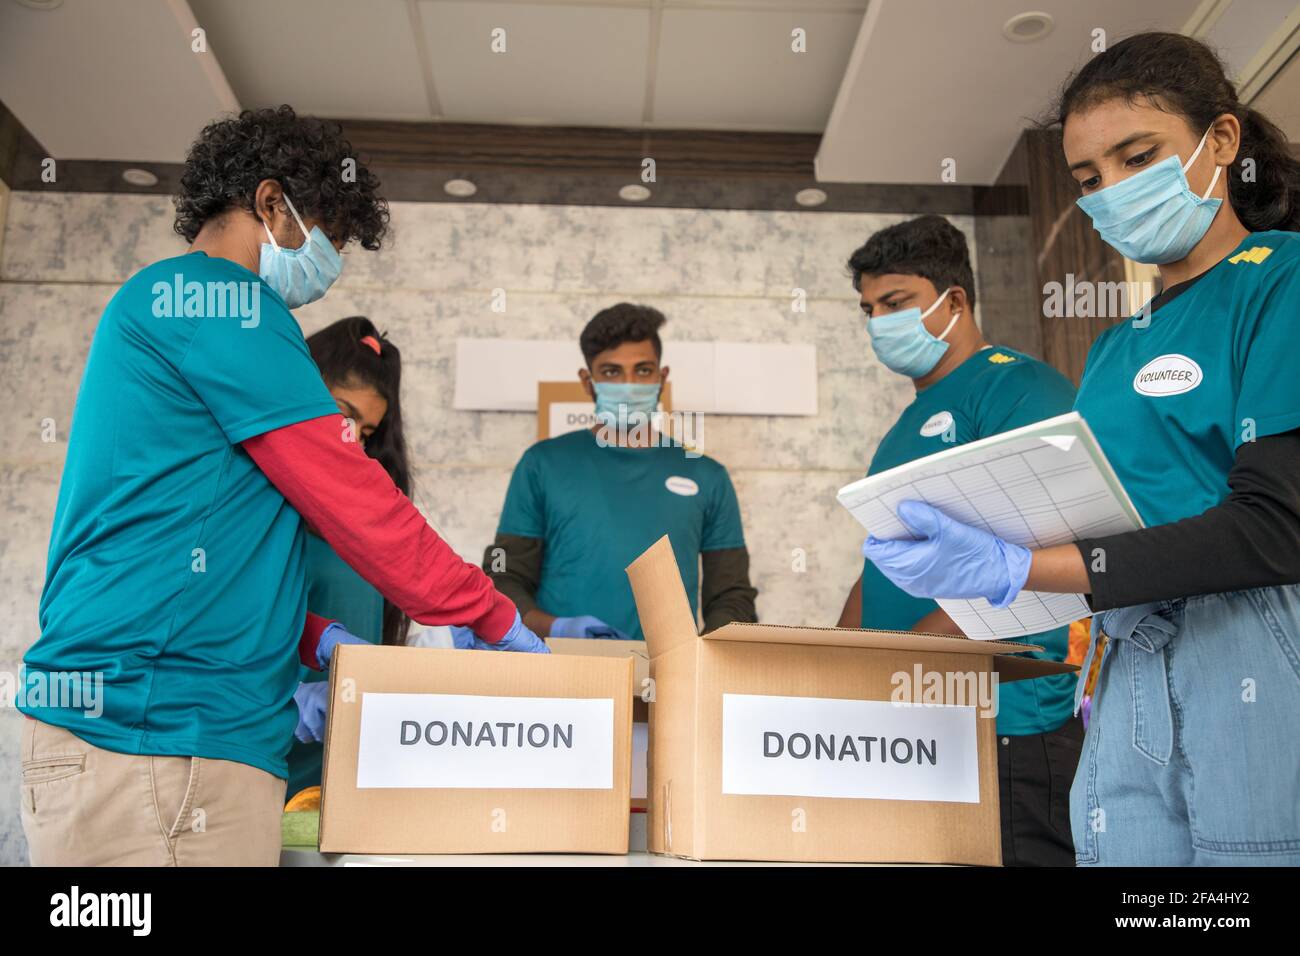 Focus sur la fille avant, Groupe de bénévoles occupés à travailler en organisant des vêtements et des boîtes de dons pendant le coronavirus covid-19 confinement pandémique - concept Banque D'Images